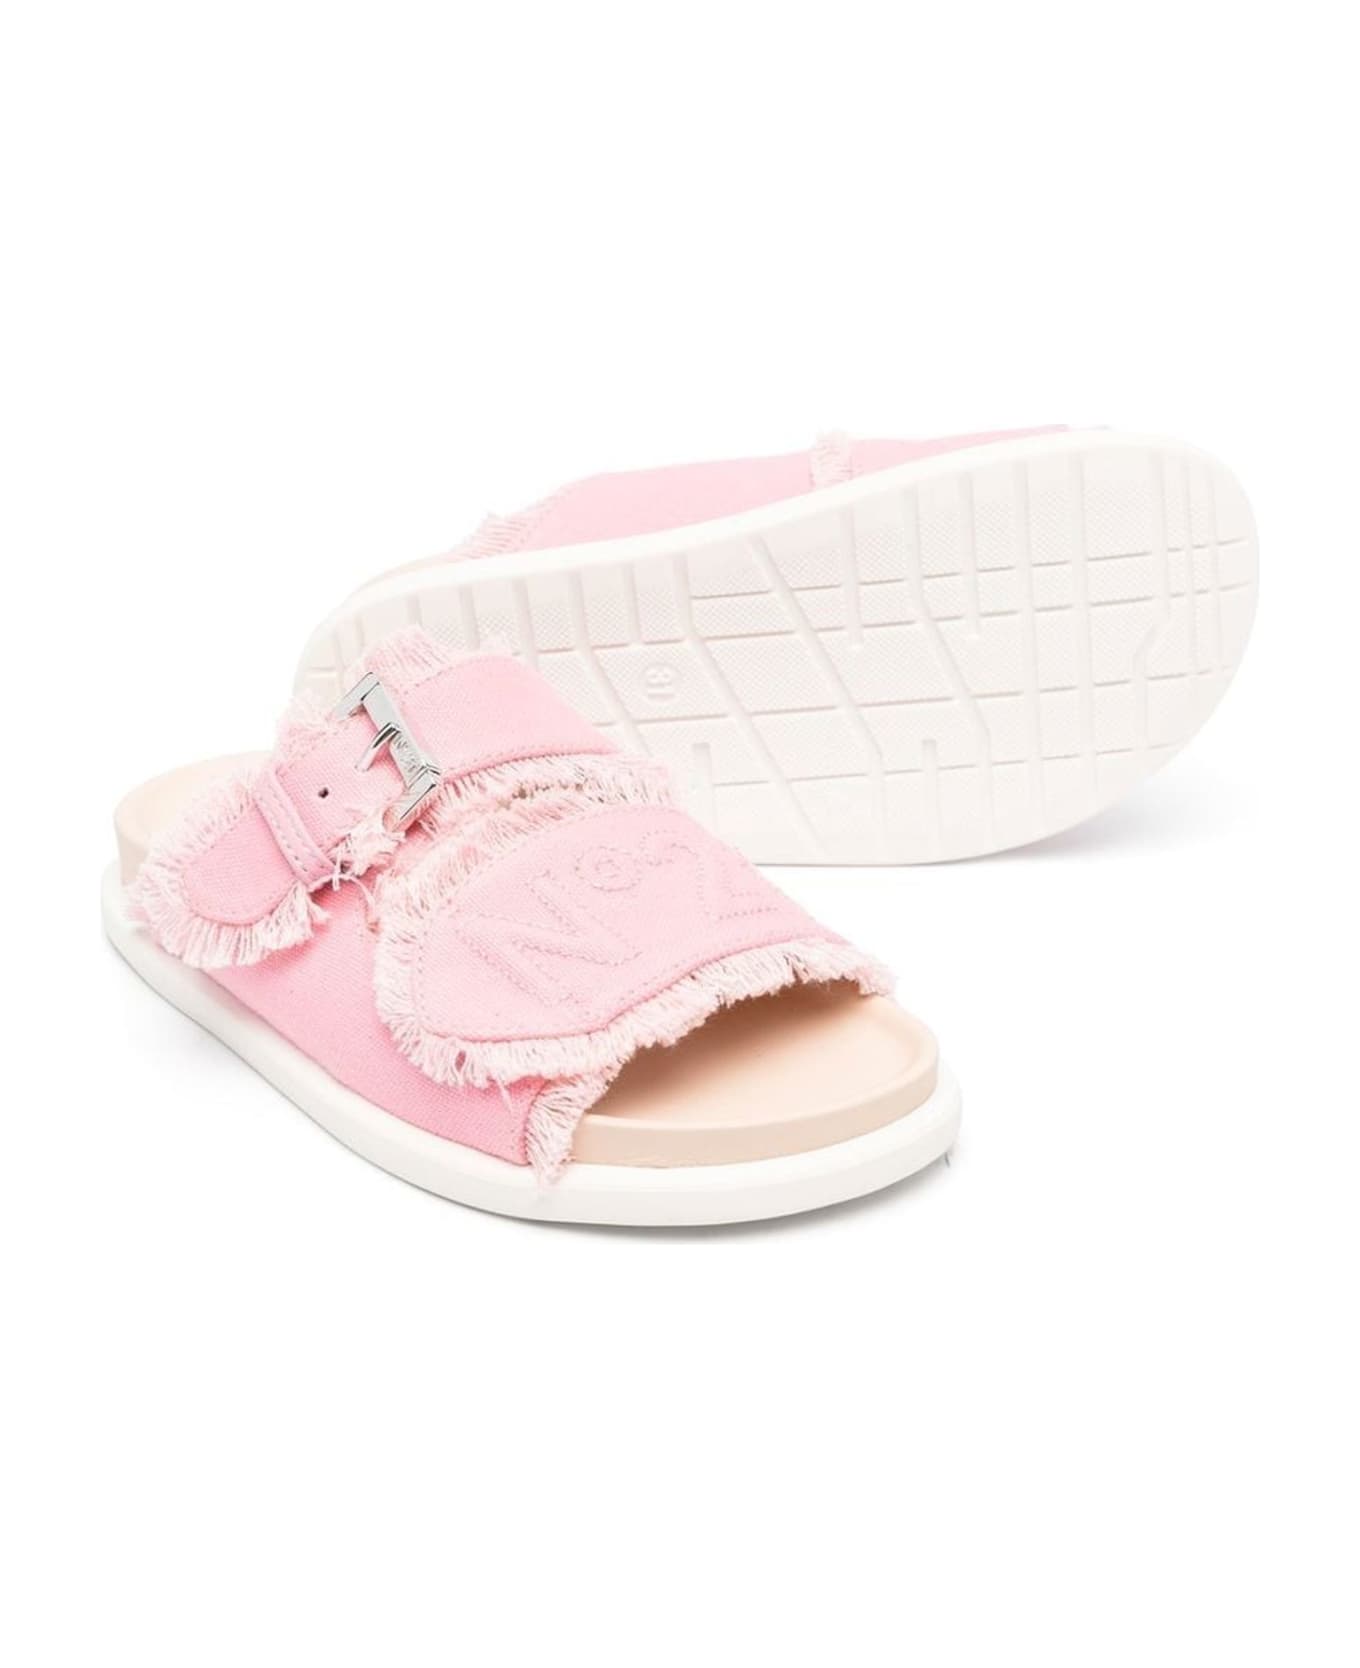 N.21 N°21 Sandals Pink - Pink